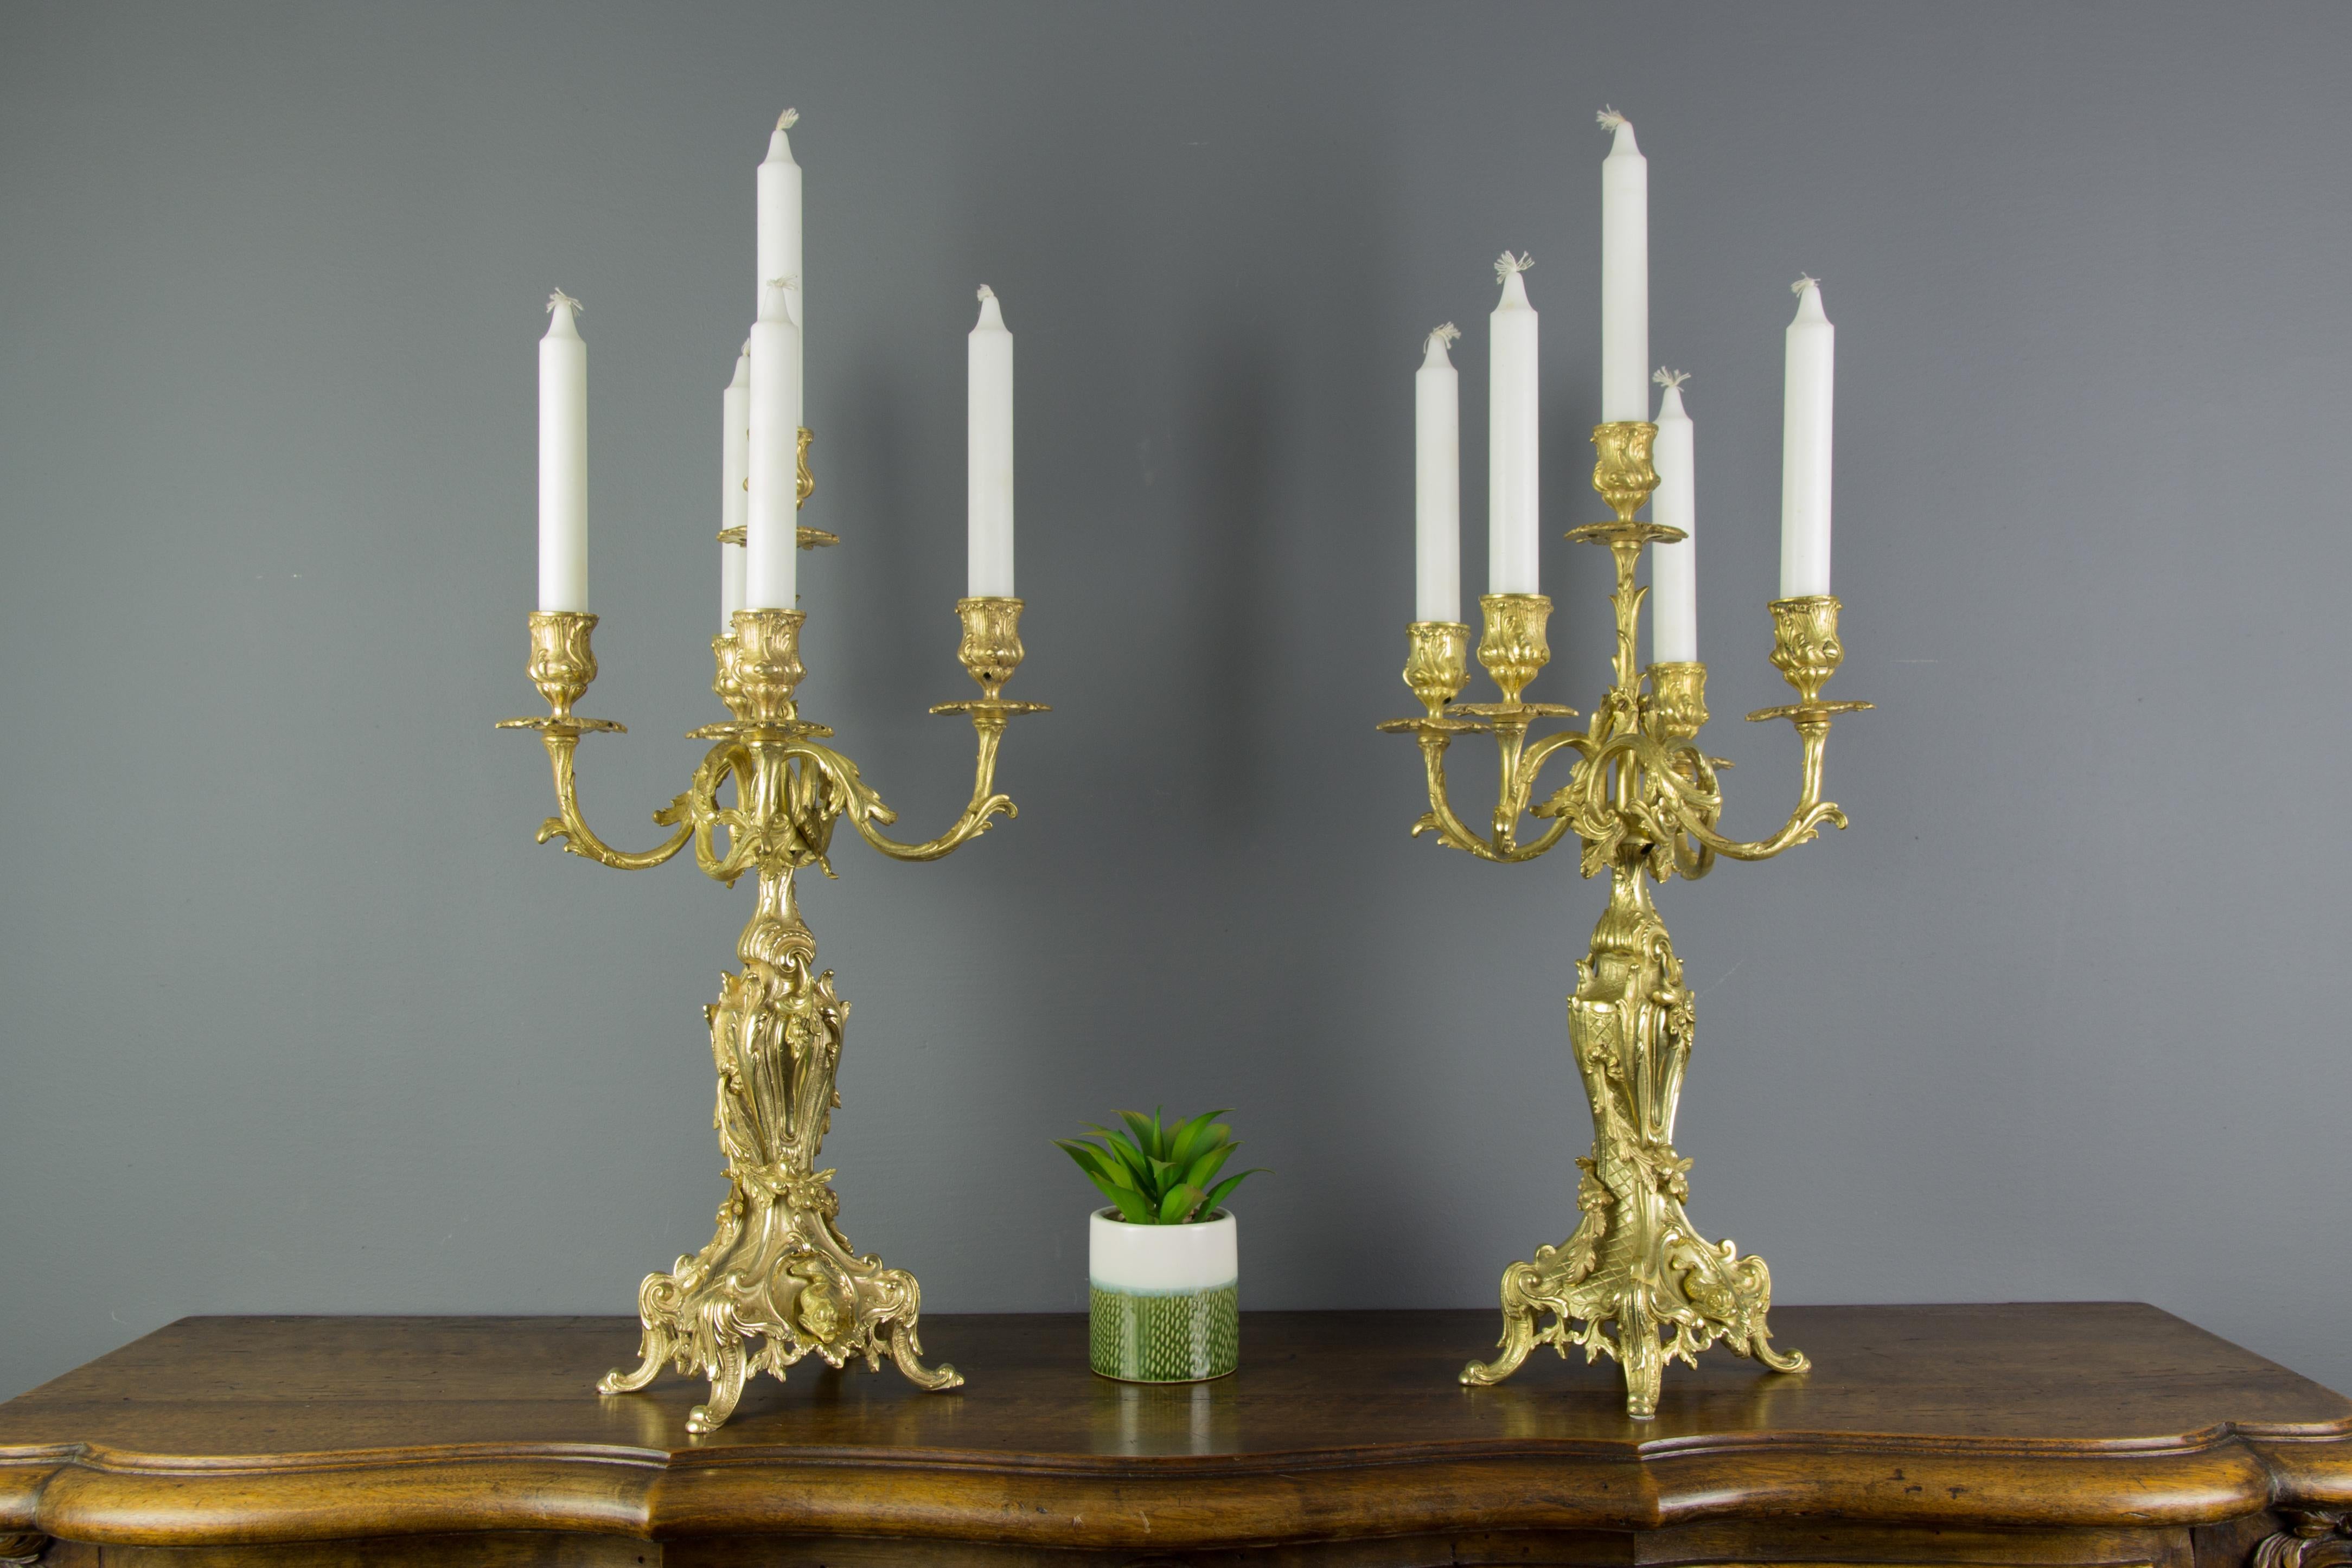 Ein entzückendes Paar Bronzeleuchter im Stil Louis XV oder Rokoko. Die Verzierung der Kandelaber ist sehr reichhaltig und charakteristisch für den Stil des Rokoko. Die geschwungenen Rokoko-Arme mit floralen Tropfschalen und blattförmigen